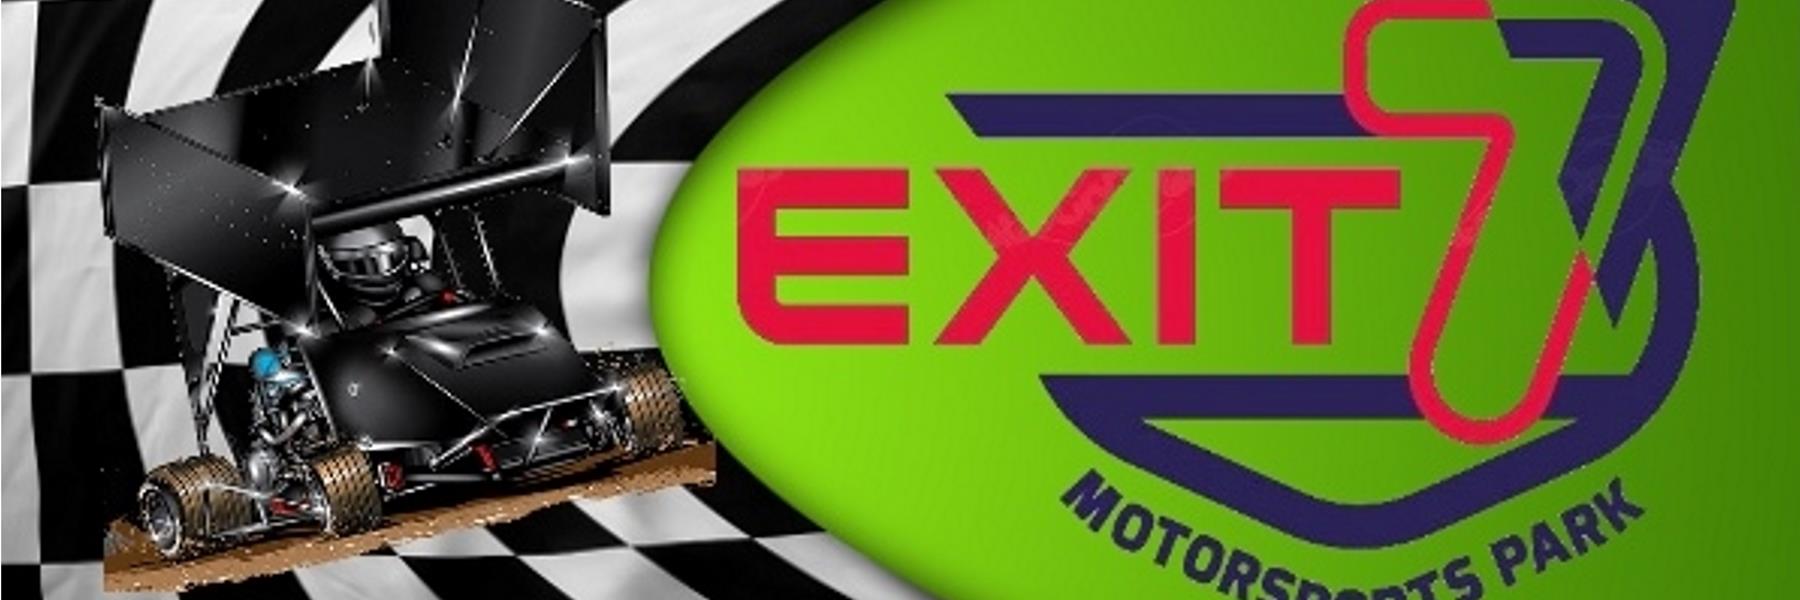 5/30/2022 - Exit 7 Motorsports Park